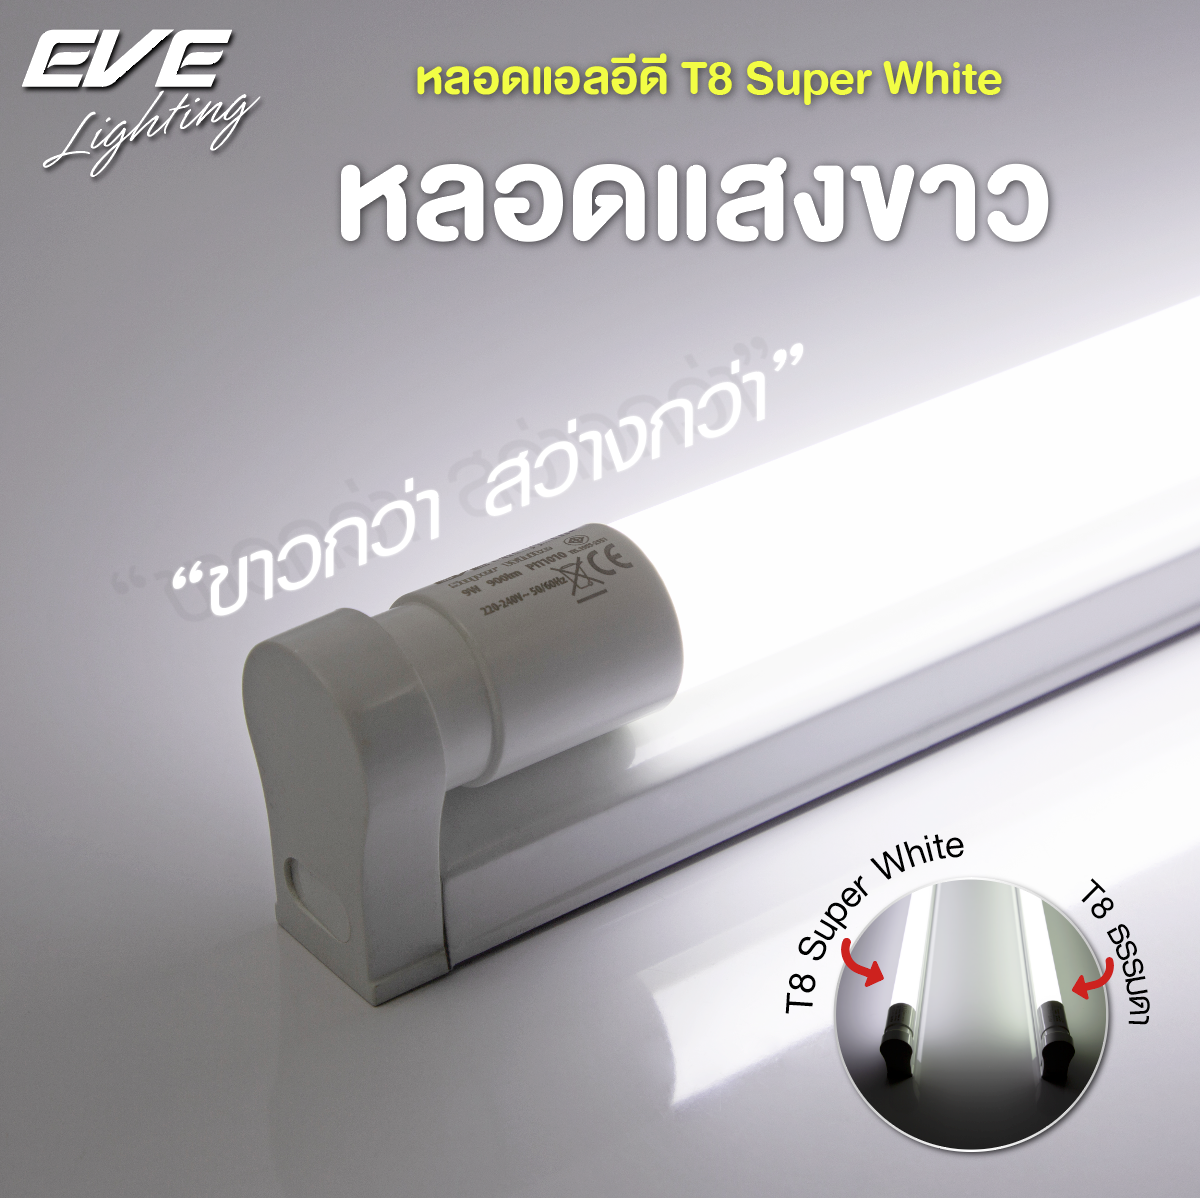 LED T8 Super White หลอดแอลอีดี T8 ซุปเปอร์ไวท์ แสงขาวกว่าหลอดทั่วไป ชนิดไฟเข้าสองทาง ขนาด 9 วัตต์ และ 18 วัตต์